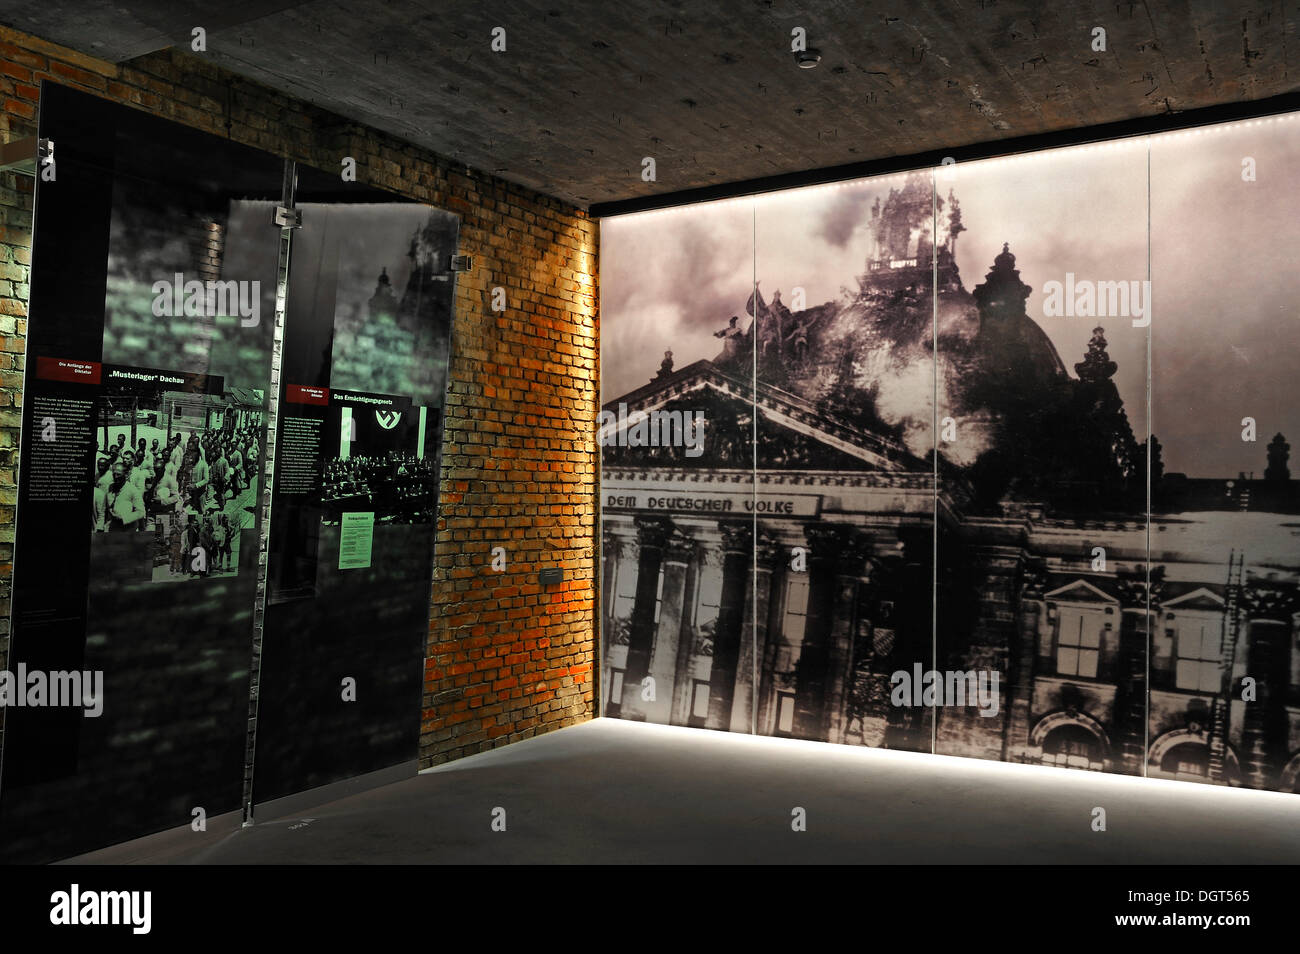 Avec hall d'exposition de tableaux d'information à propos de la montée du parti nazi, à droite, une grande photo de l'incendie du Reichstag de 1933, Banque D'Images